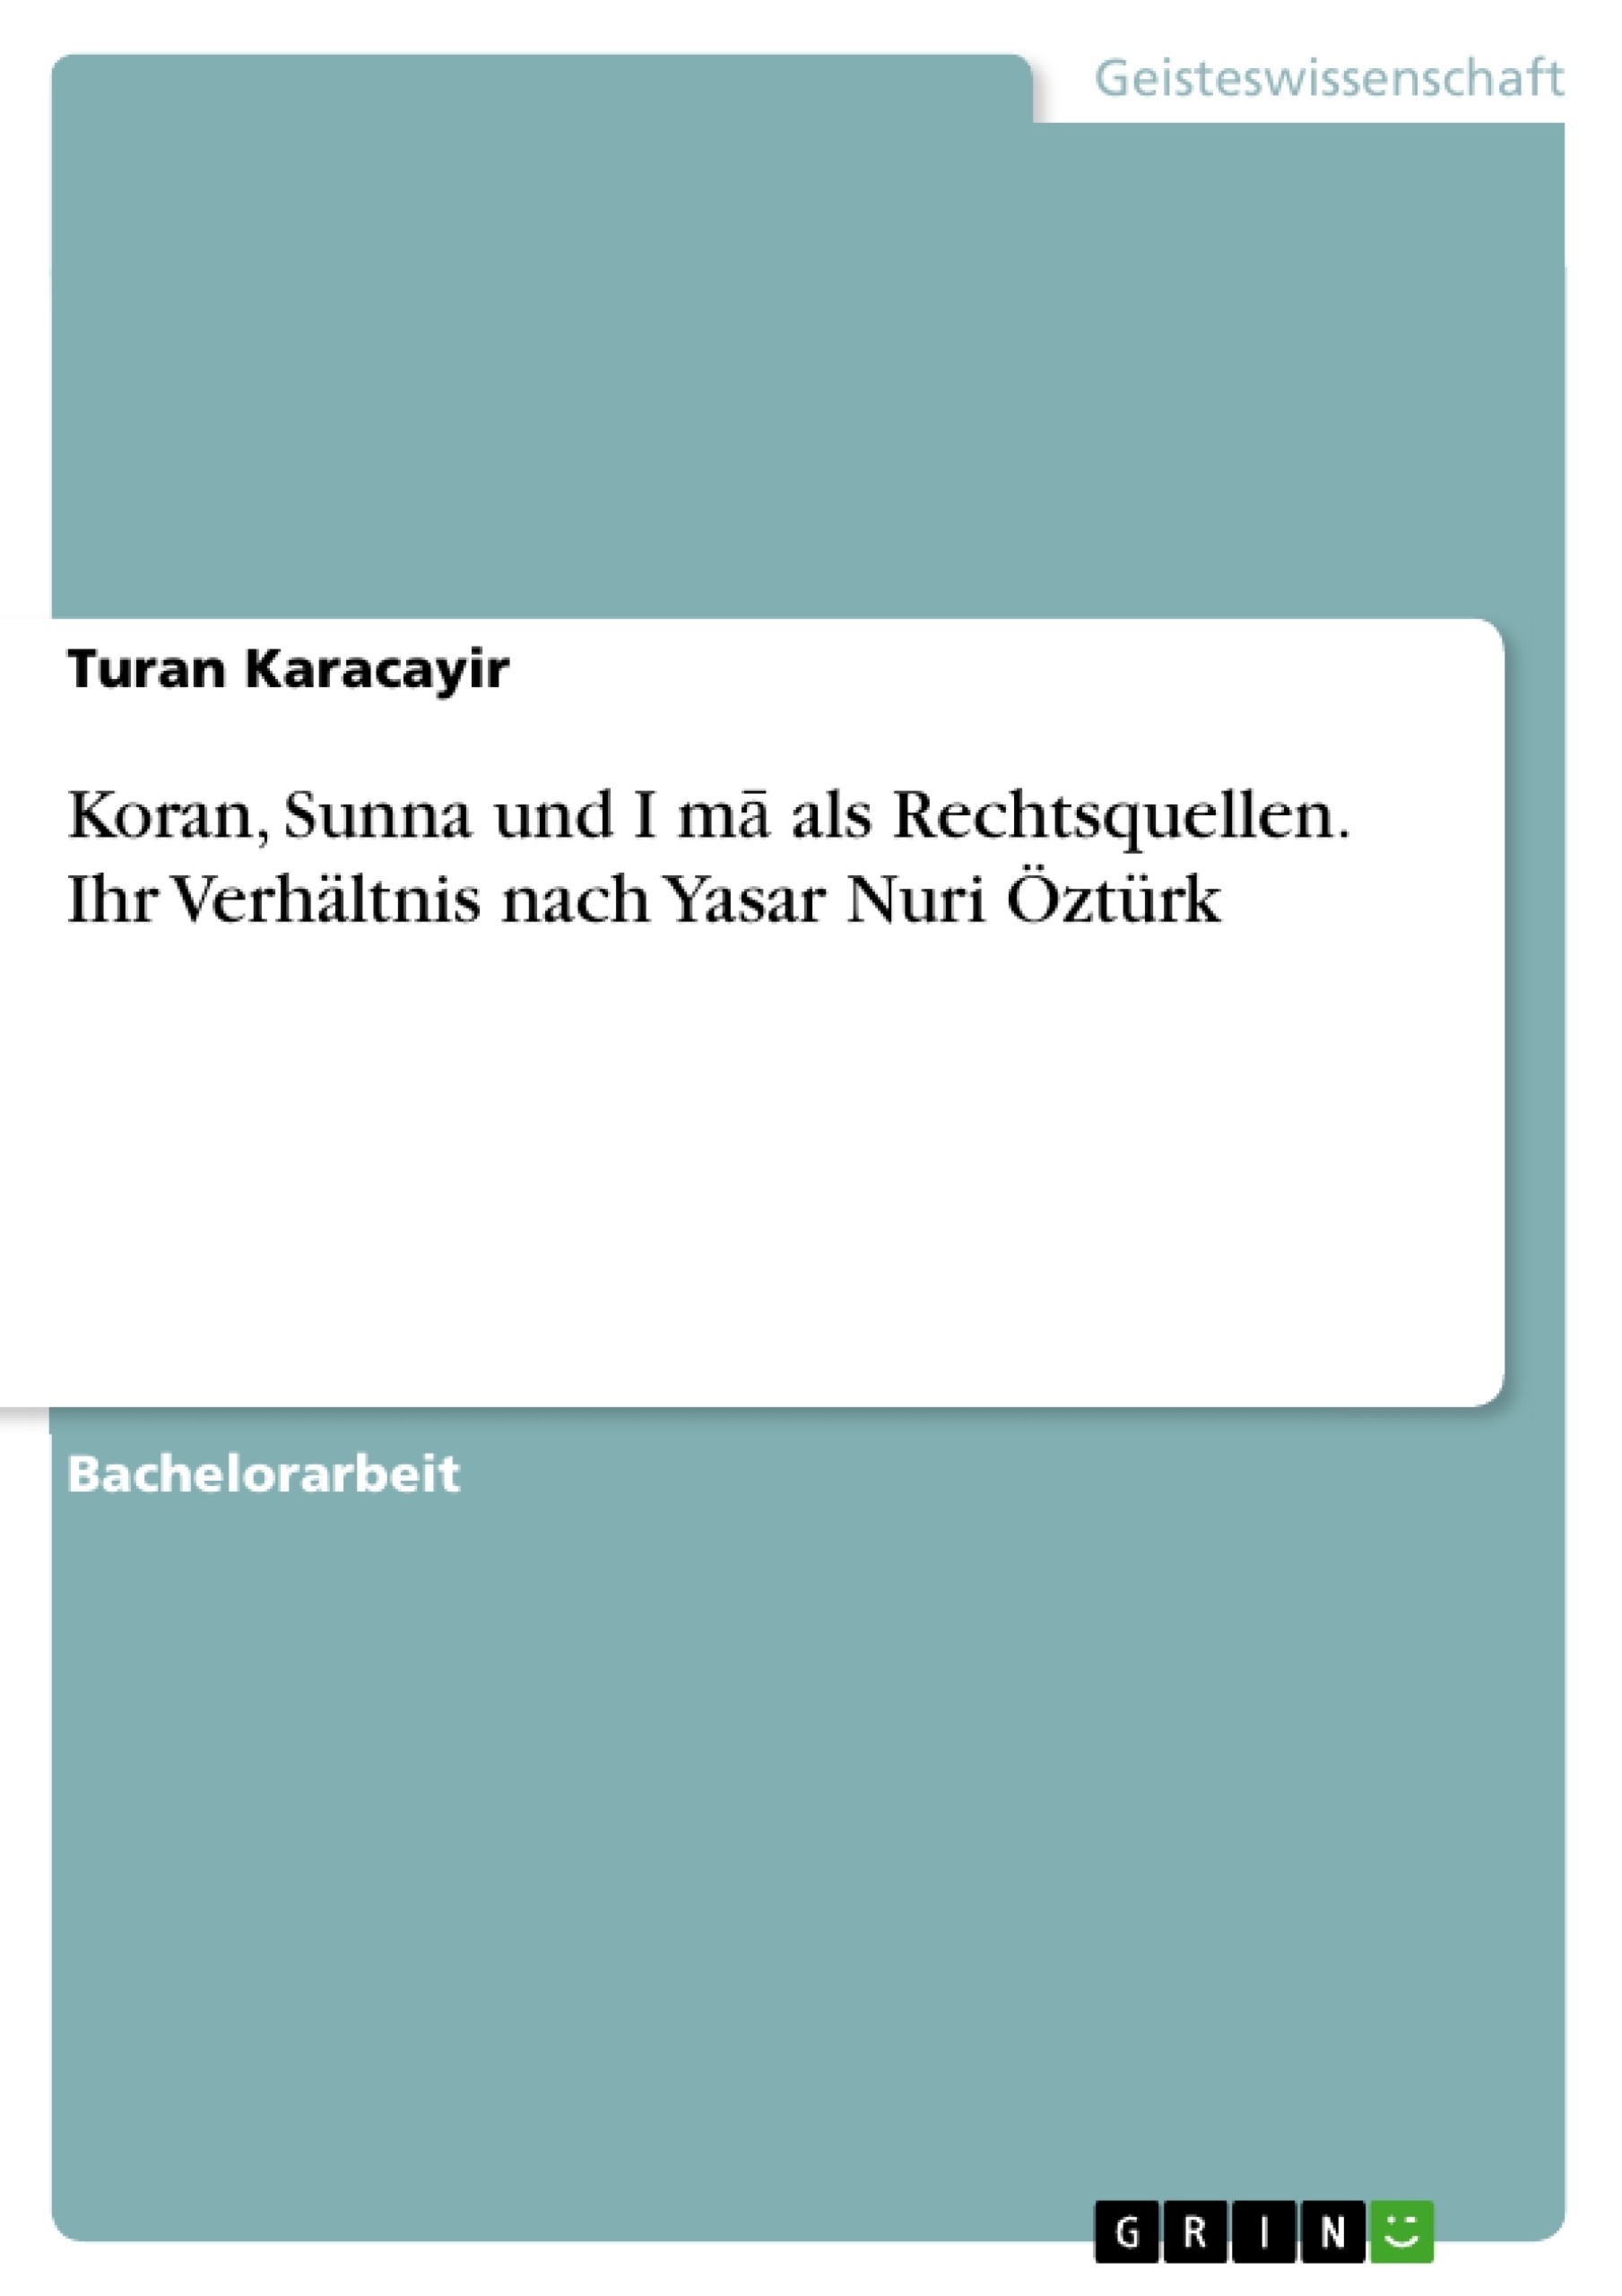 Titel: Koran, Sunna und Iḡmā als Rechtsquellen. Ihr Verhältnis nach Yasar Nuri Öztürk